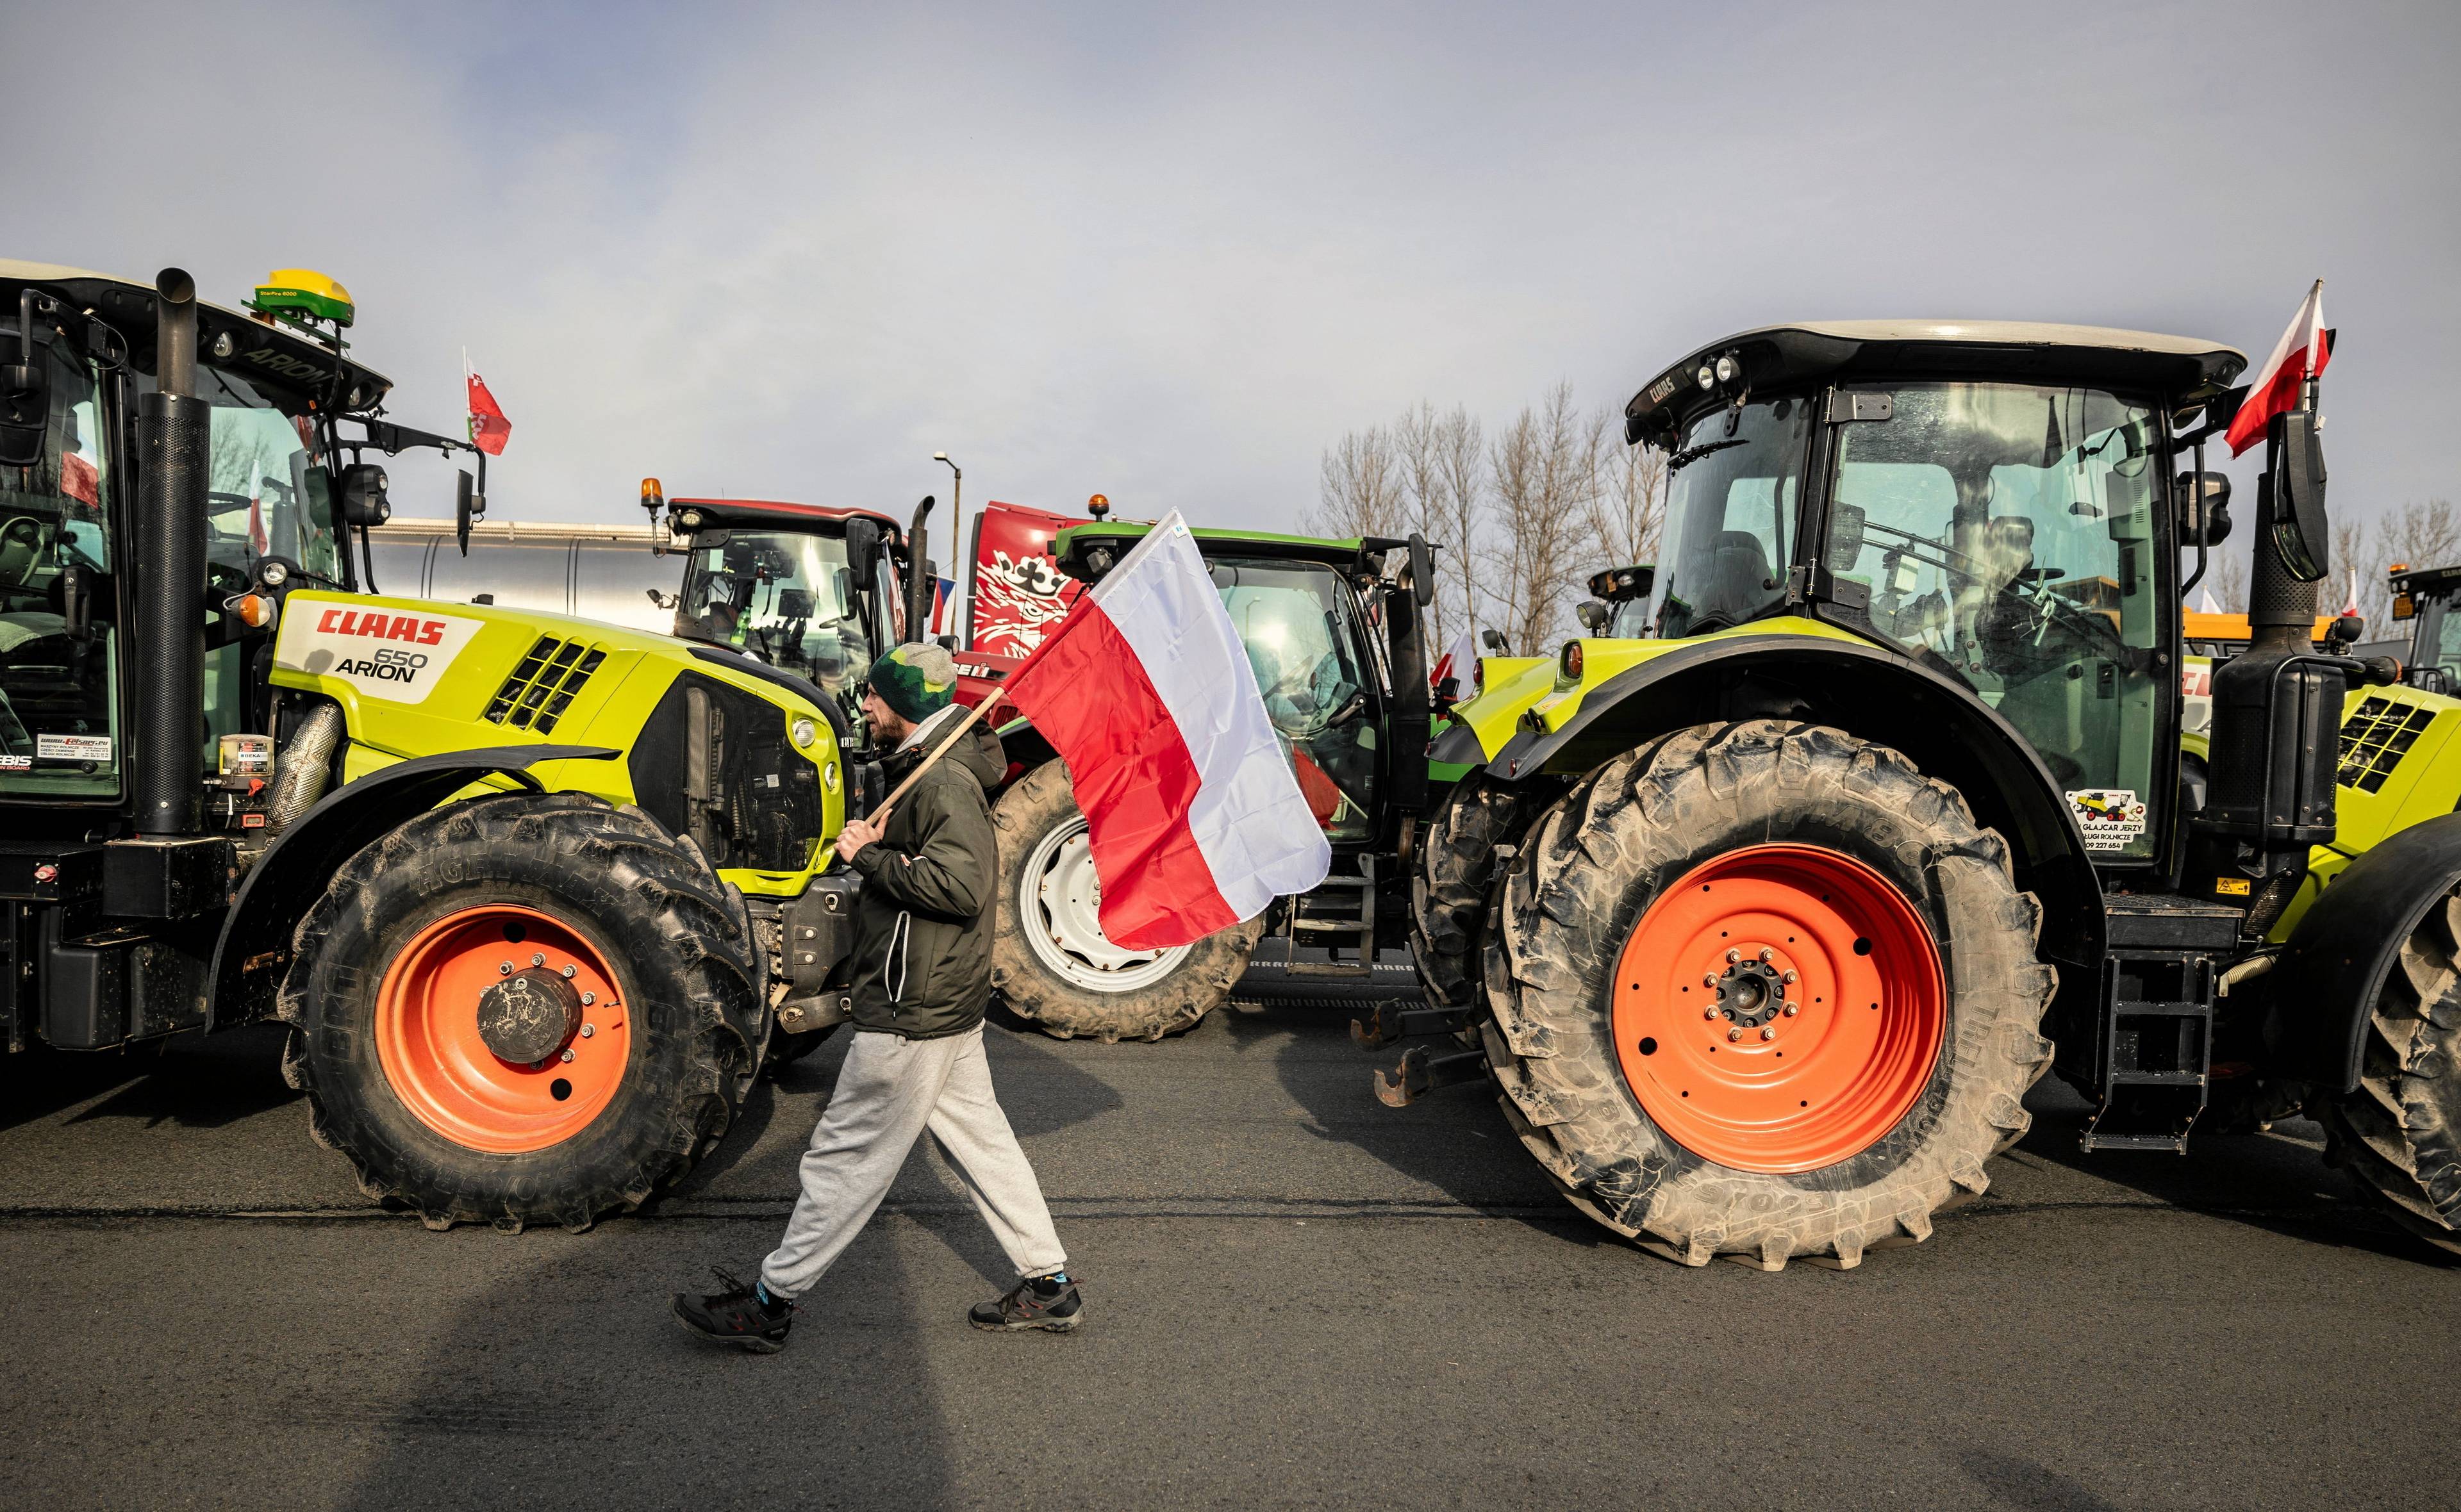 Protest rolników w Cieszynie. Dwa traktory, a pomiędzy nimi mężczyzna z biało-czerwoną flagą